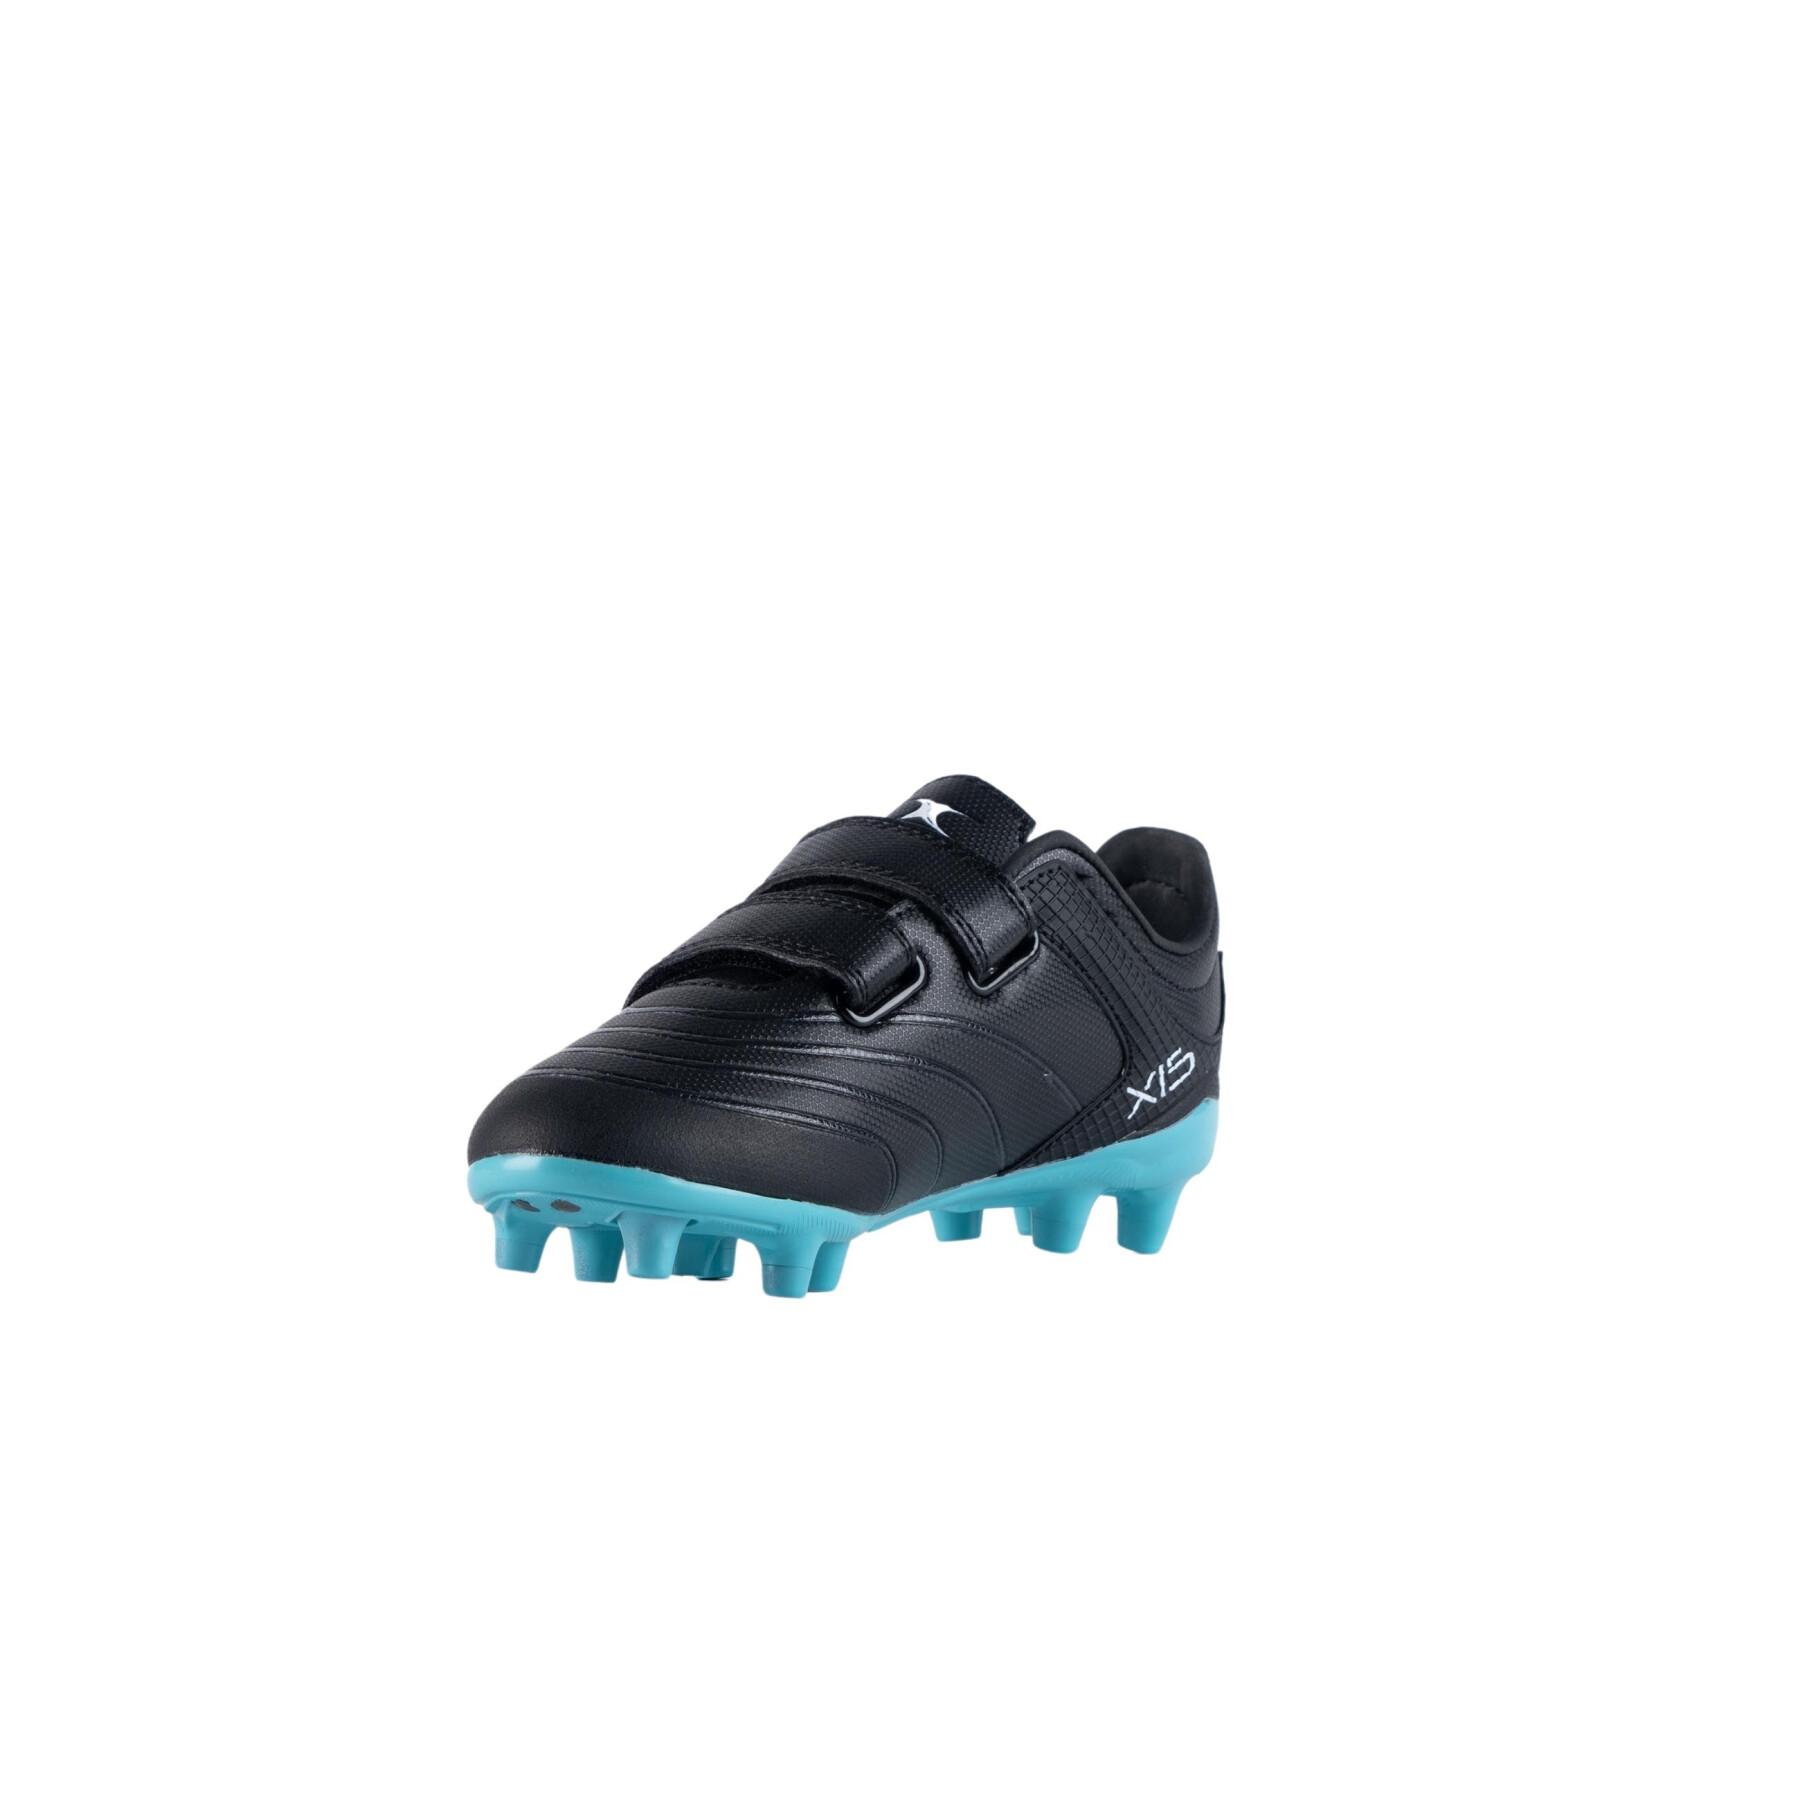 Rugby-Schuhe für Kinder Gilbert Sidestep X15 LO MSX